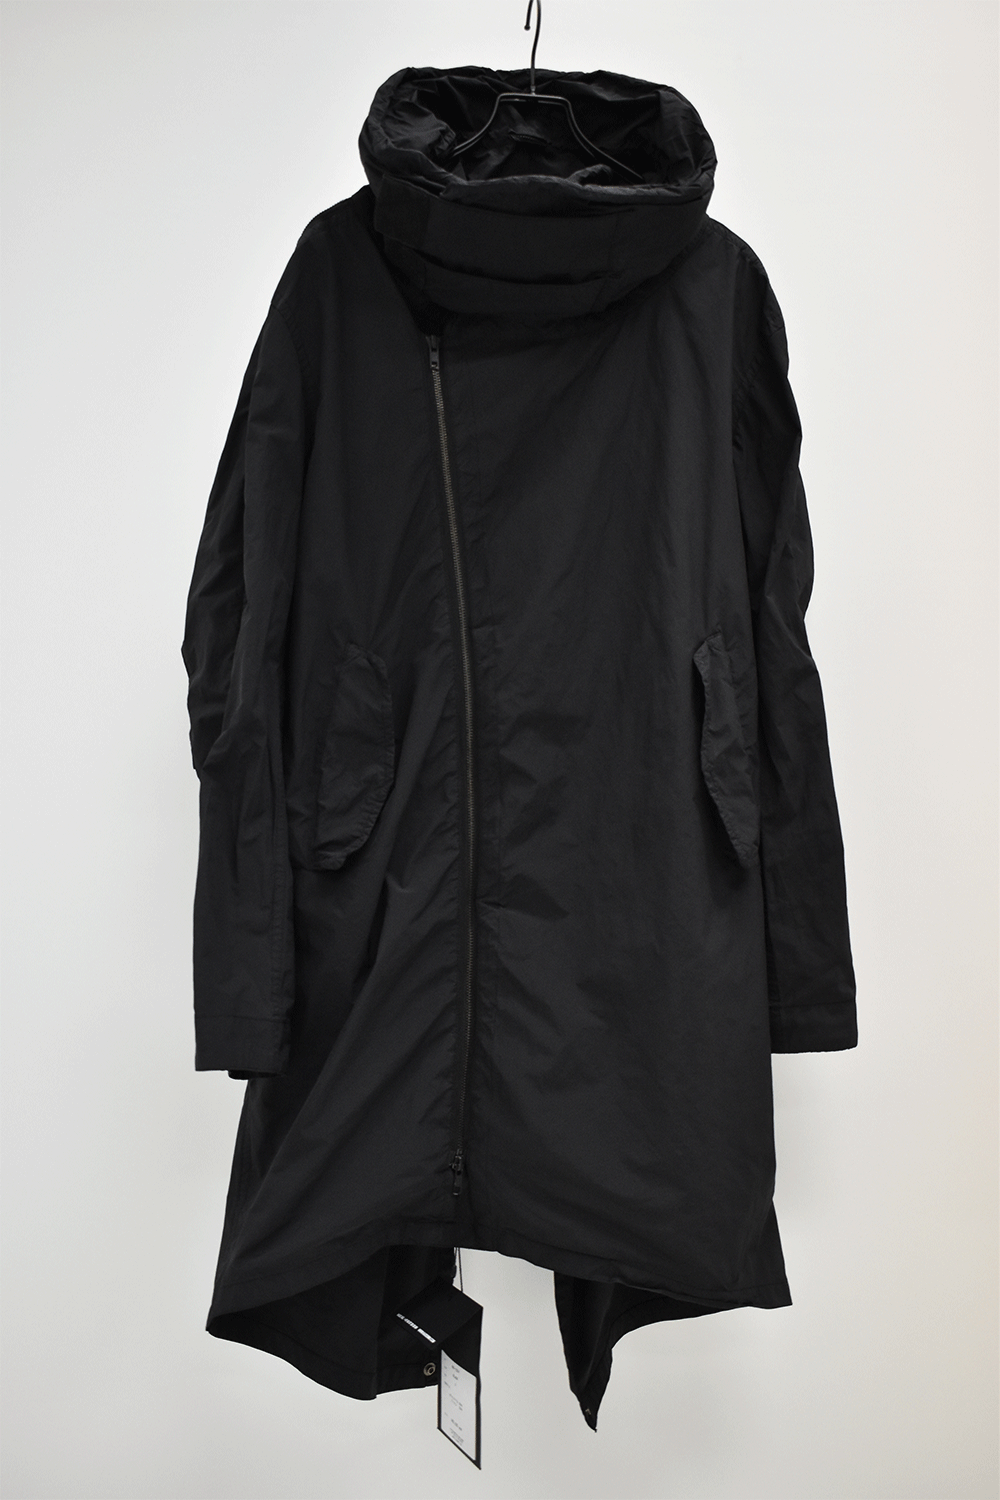 【美品】nude:masahiko maruyama モッズコート coat